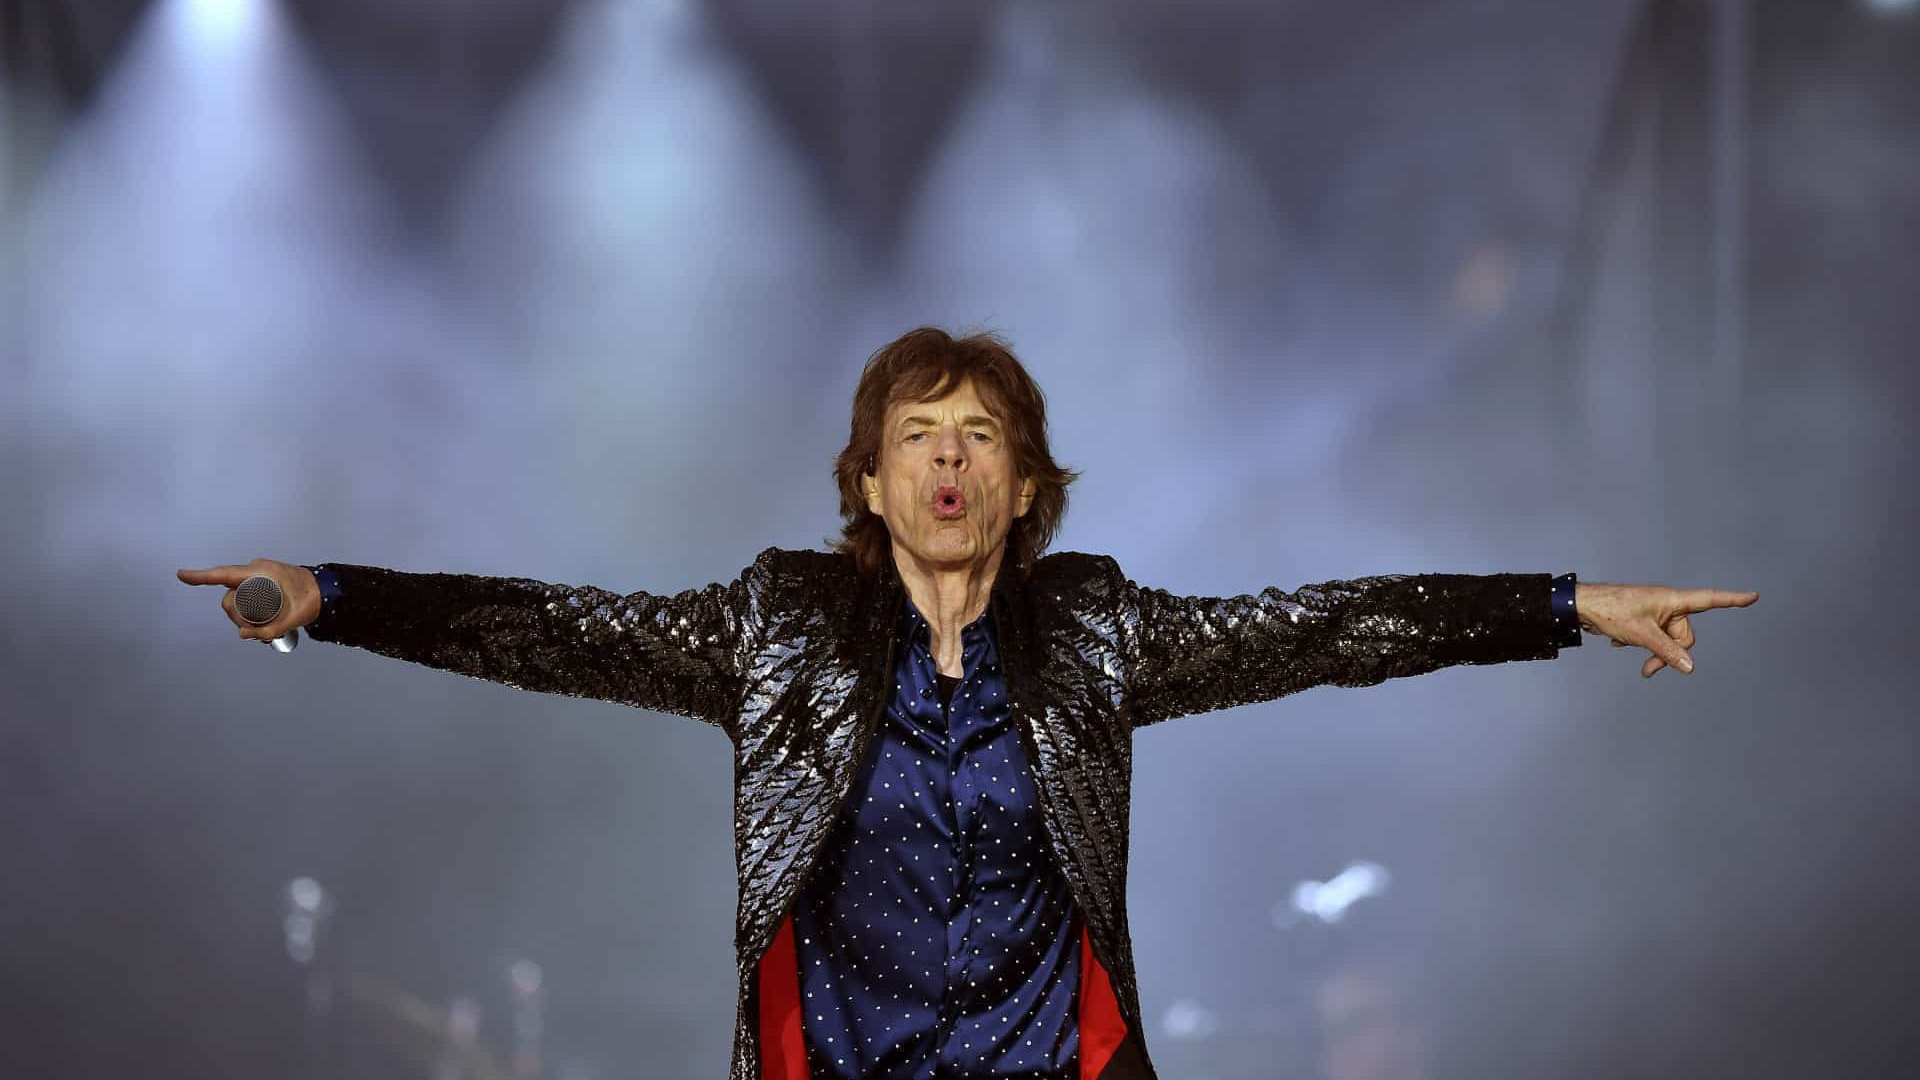 Nos 80 anos de Mick Jagger, relembre trajetória com os Rolling Stones em 8 canções